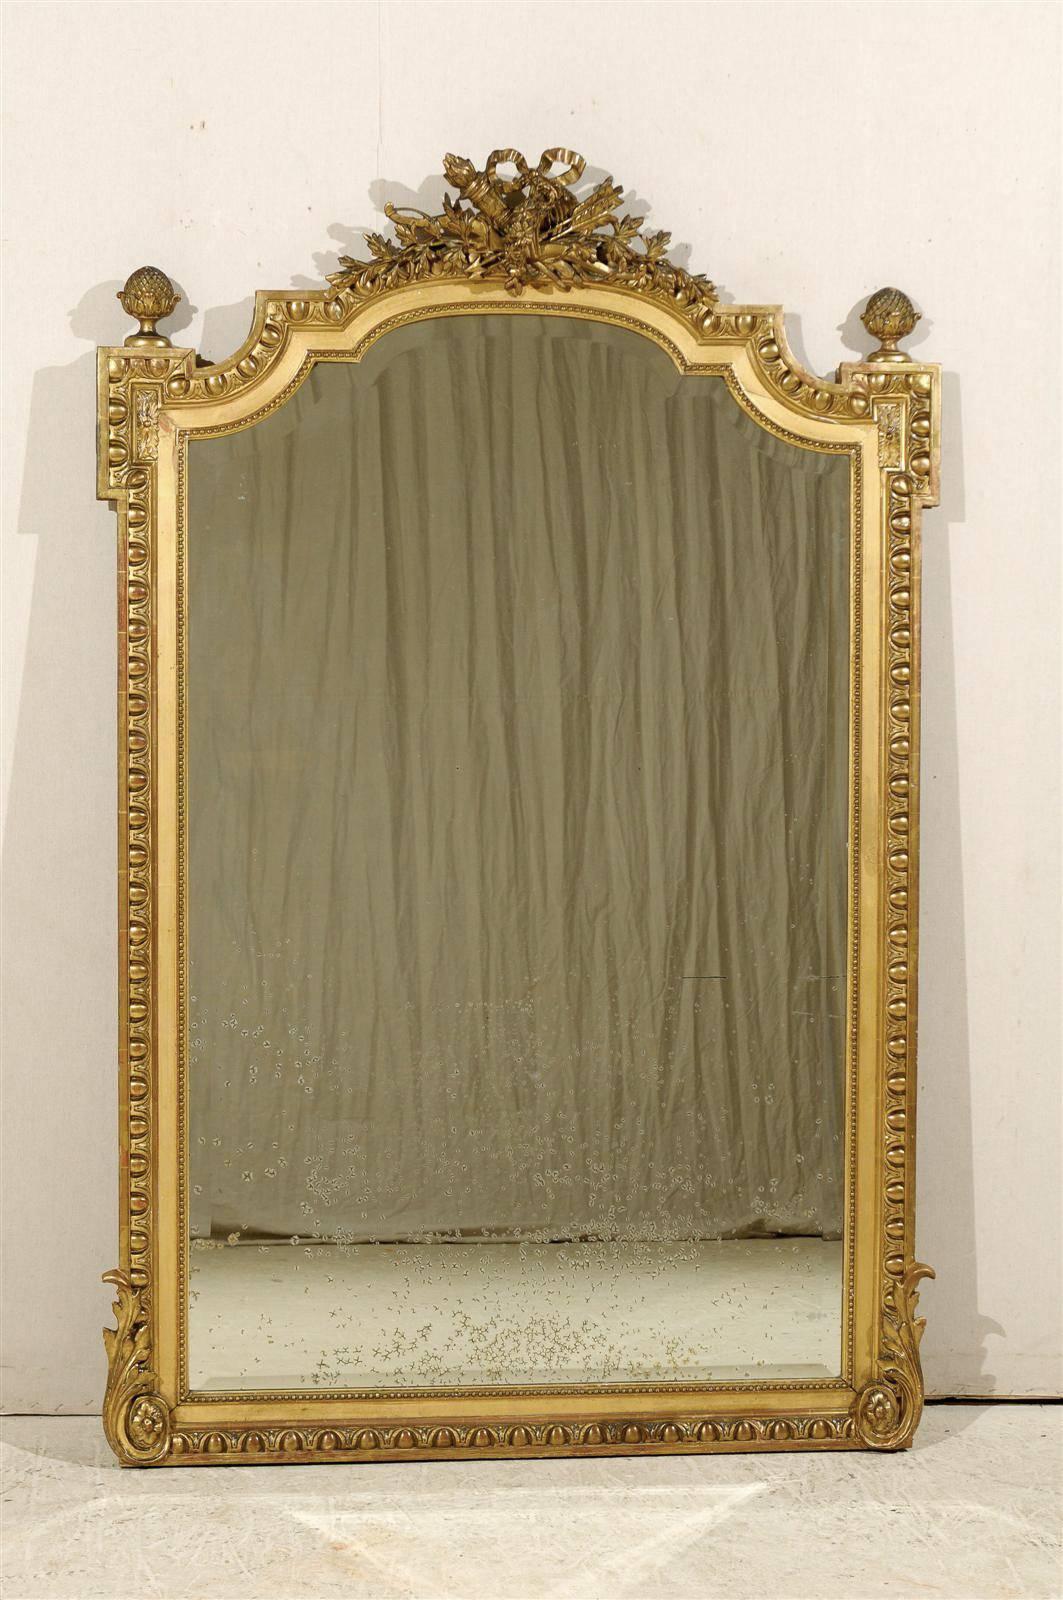 Un grand miroir français richement sculpté et doré du début du 20e siècle.  Ce miroir en bois doré de grande taille présente un écusson richement orné d'un nœud papillon, de rubans, de flèches et de torches, flanqué de fleurons en forme de pomme de